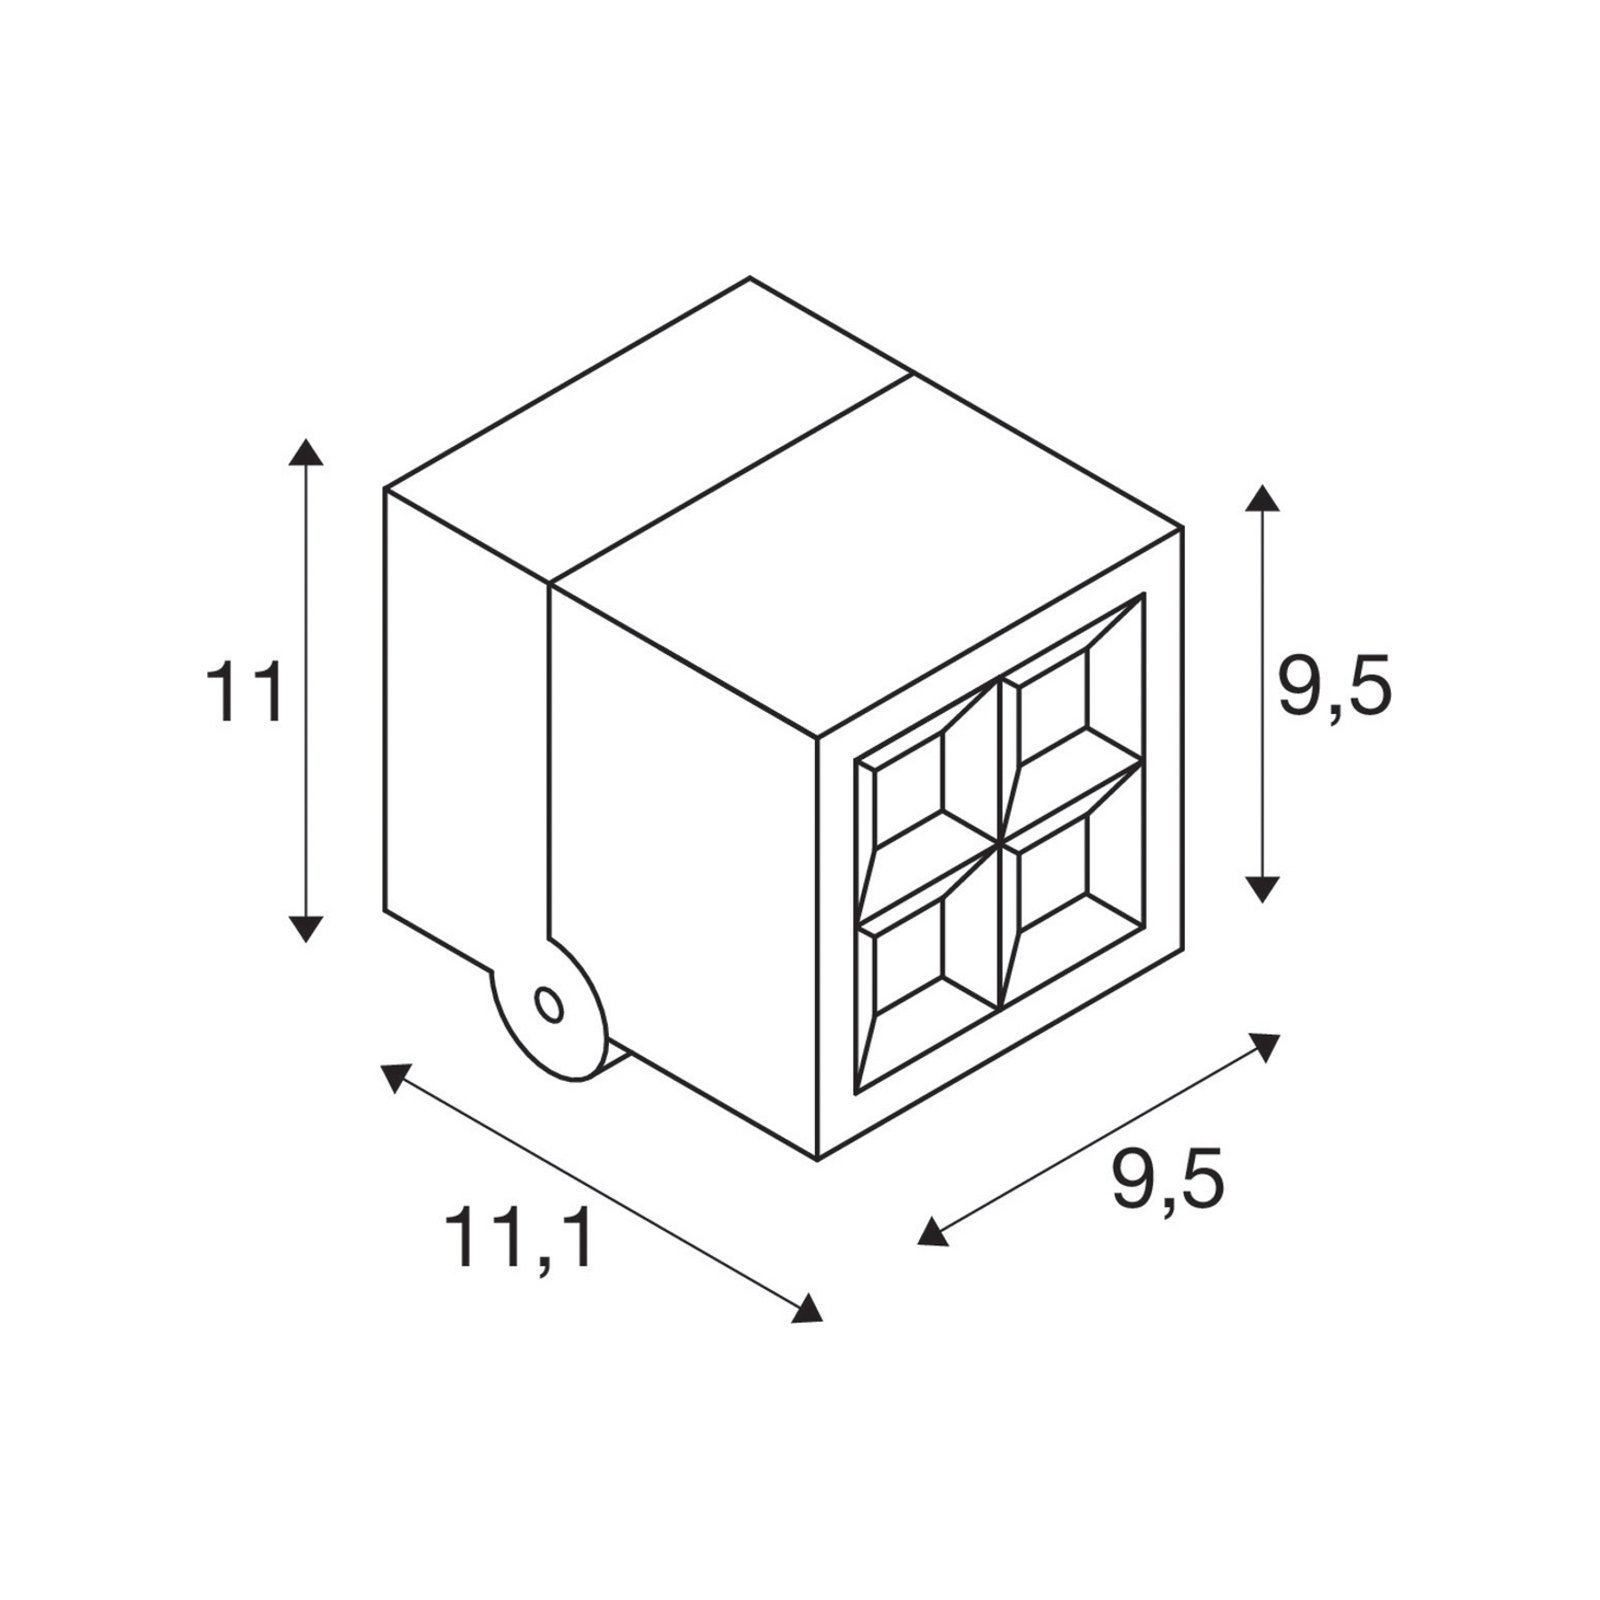 SLV Applique a LED S-Cube, antracite, alluminio, larghezza 9,5 cm, CCT